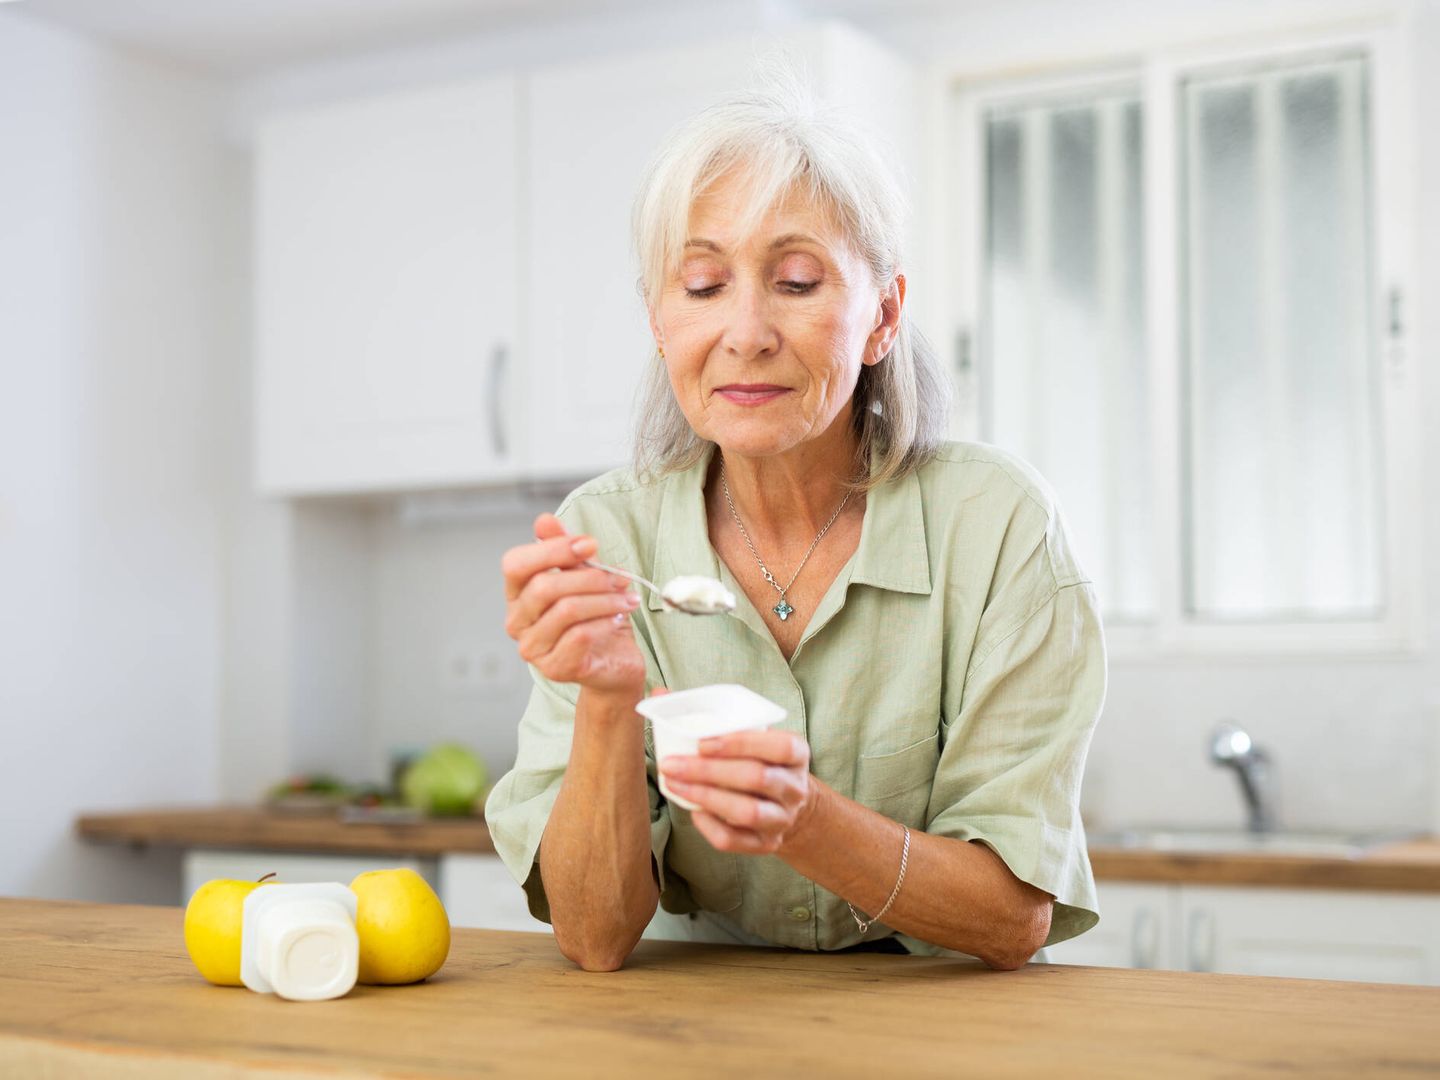 Los alimentos como el yogur, con alto contenido en probióticos, fortalecen las defensas. (iStock)